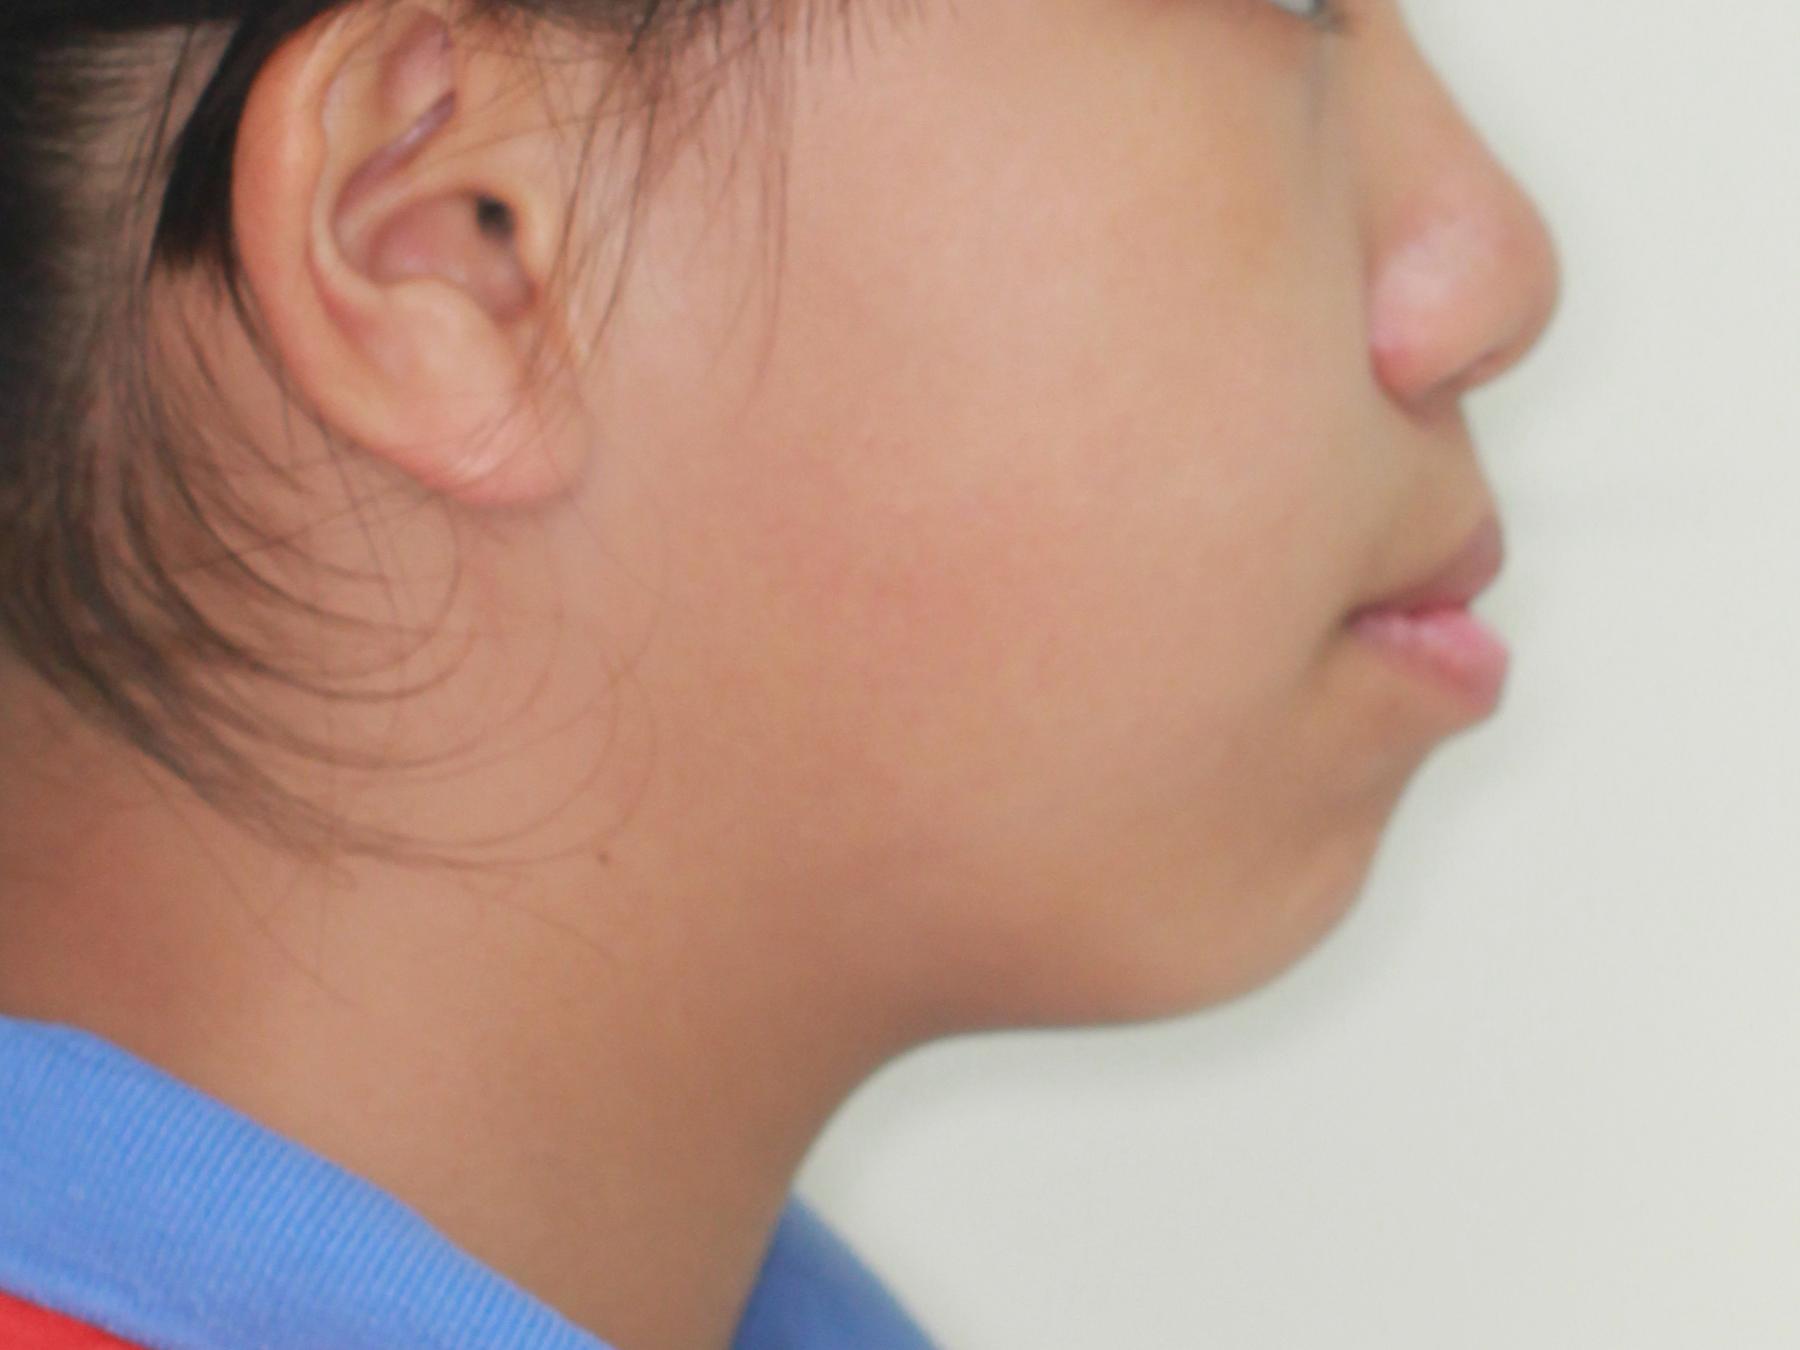 隐适美隐形矫正病例（高角，前突龅牙，拔牙矫正，下巴改形） - 知乎